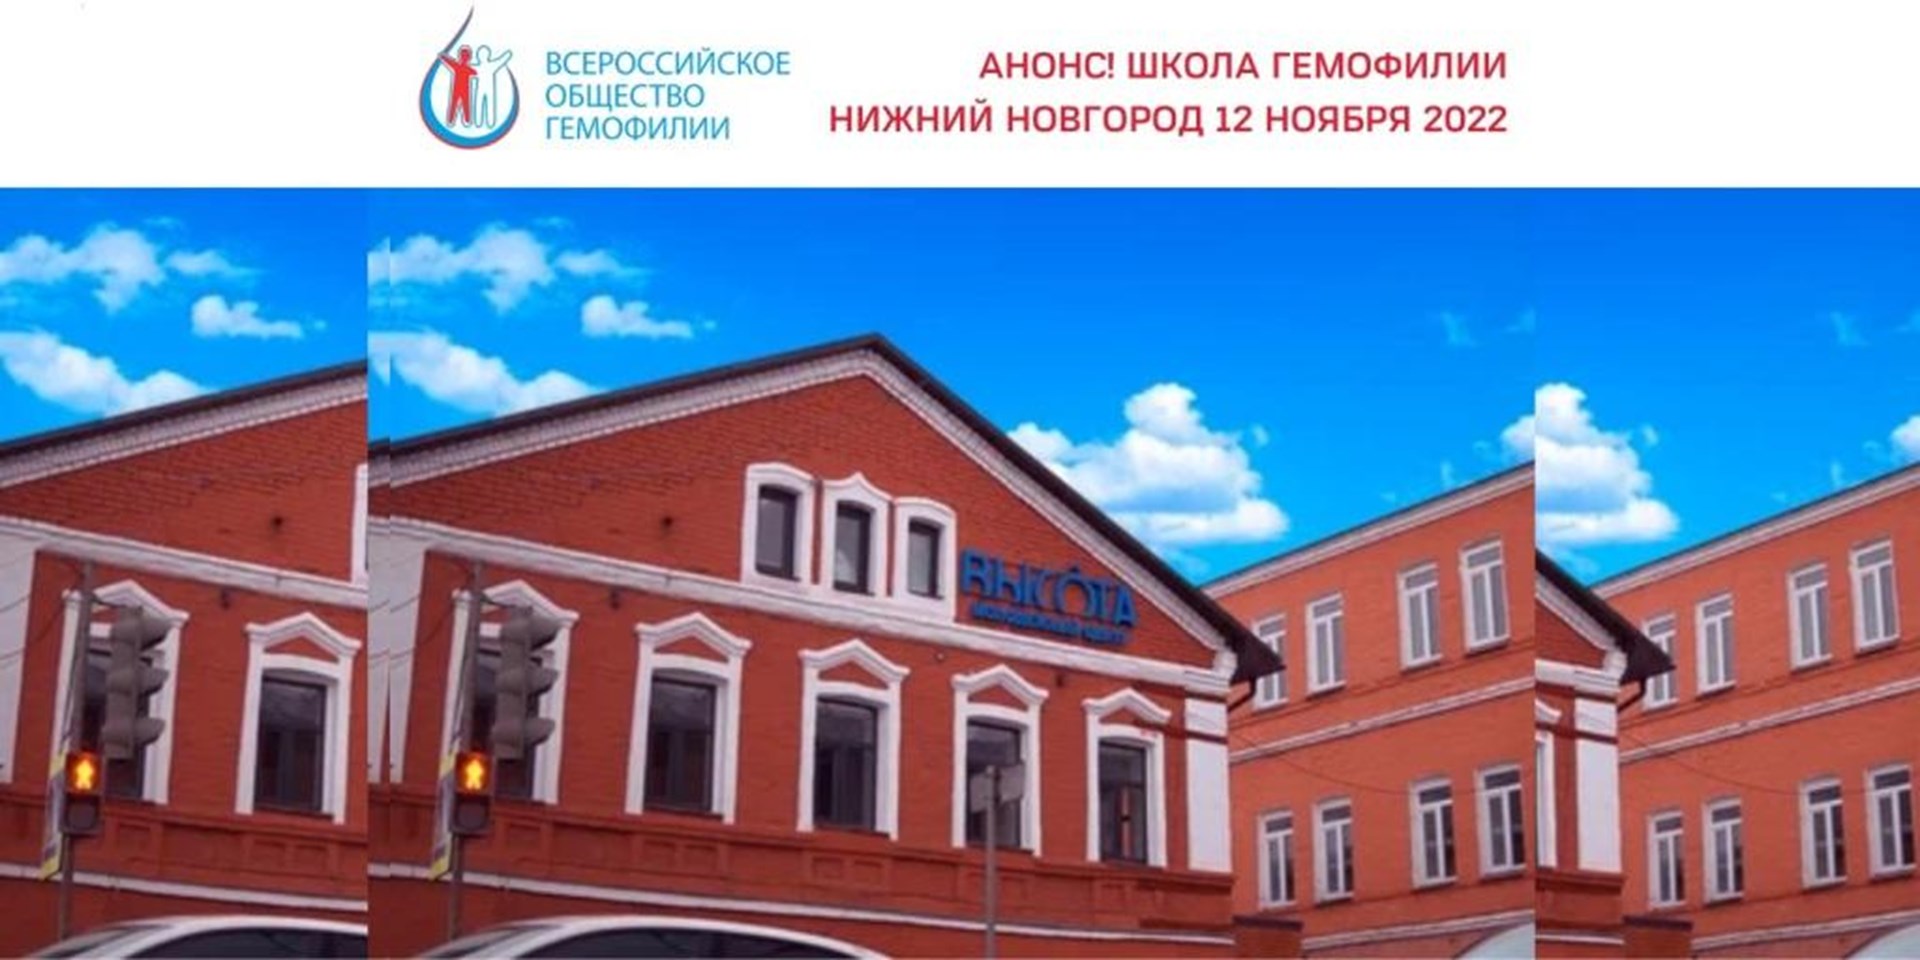 Нижний Новгород. 12 ноября 2022 года состоится Школа гемофилии